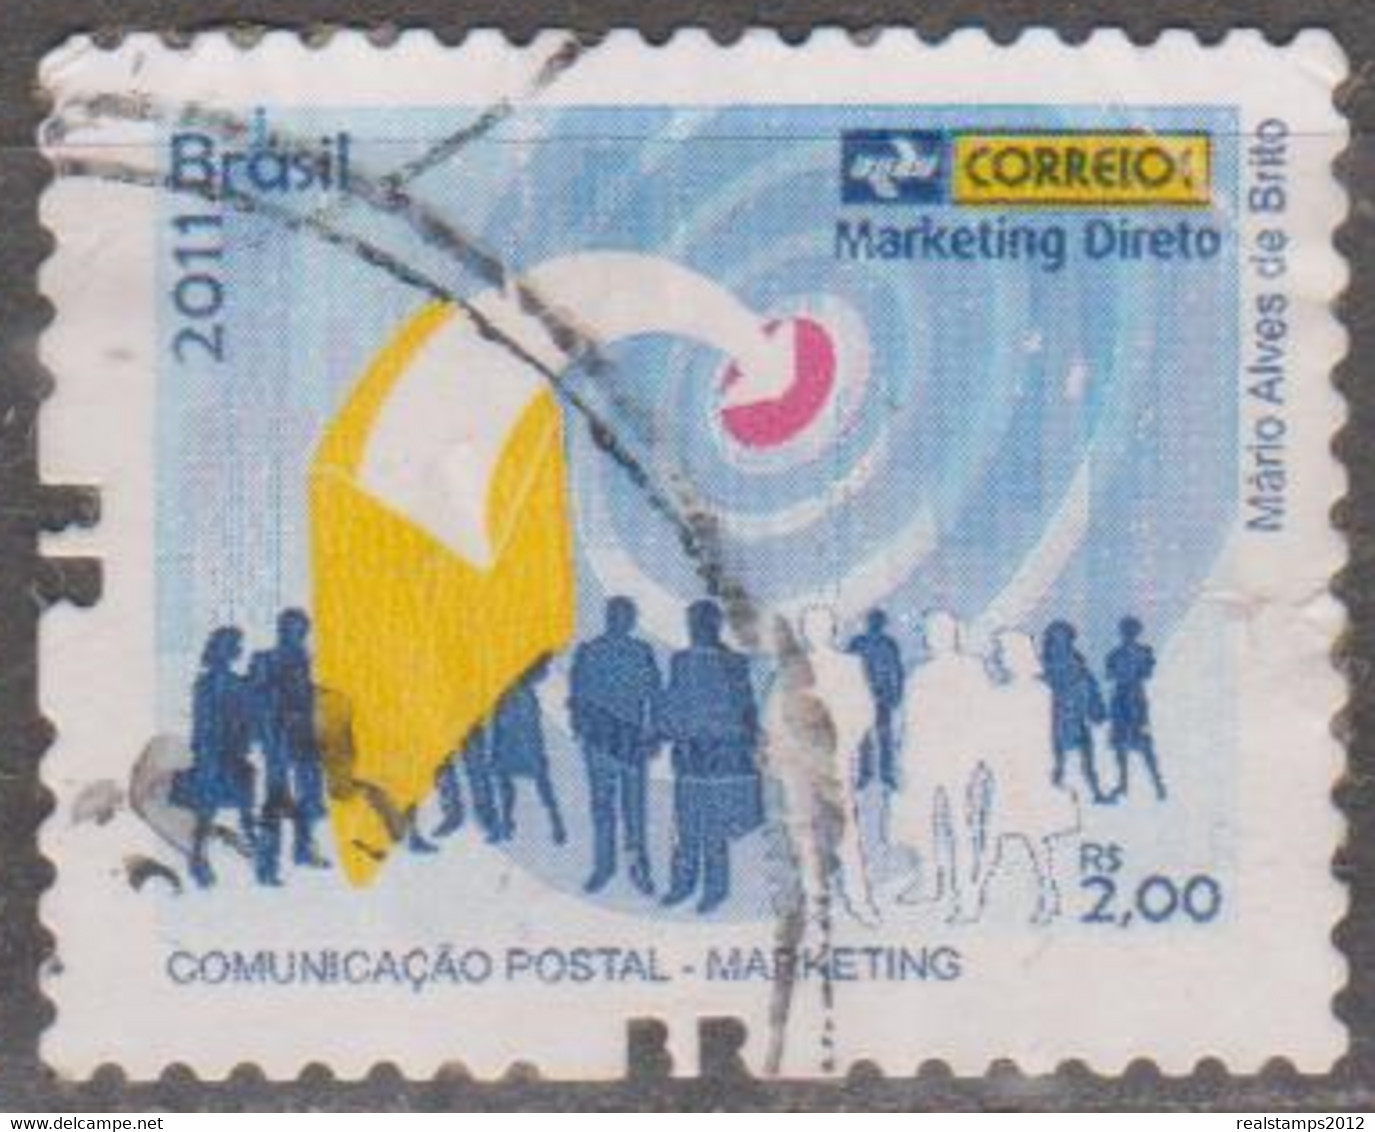 Brasil - 2011 - Comunicação Postal - Marketing   - Marketing Direto  R$ 2,00 (o)  RHM Nº - Usados